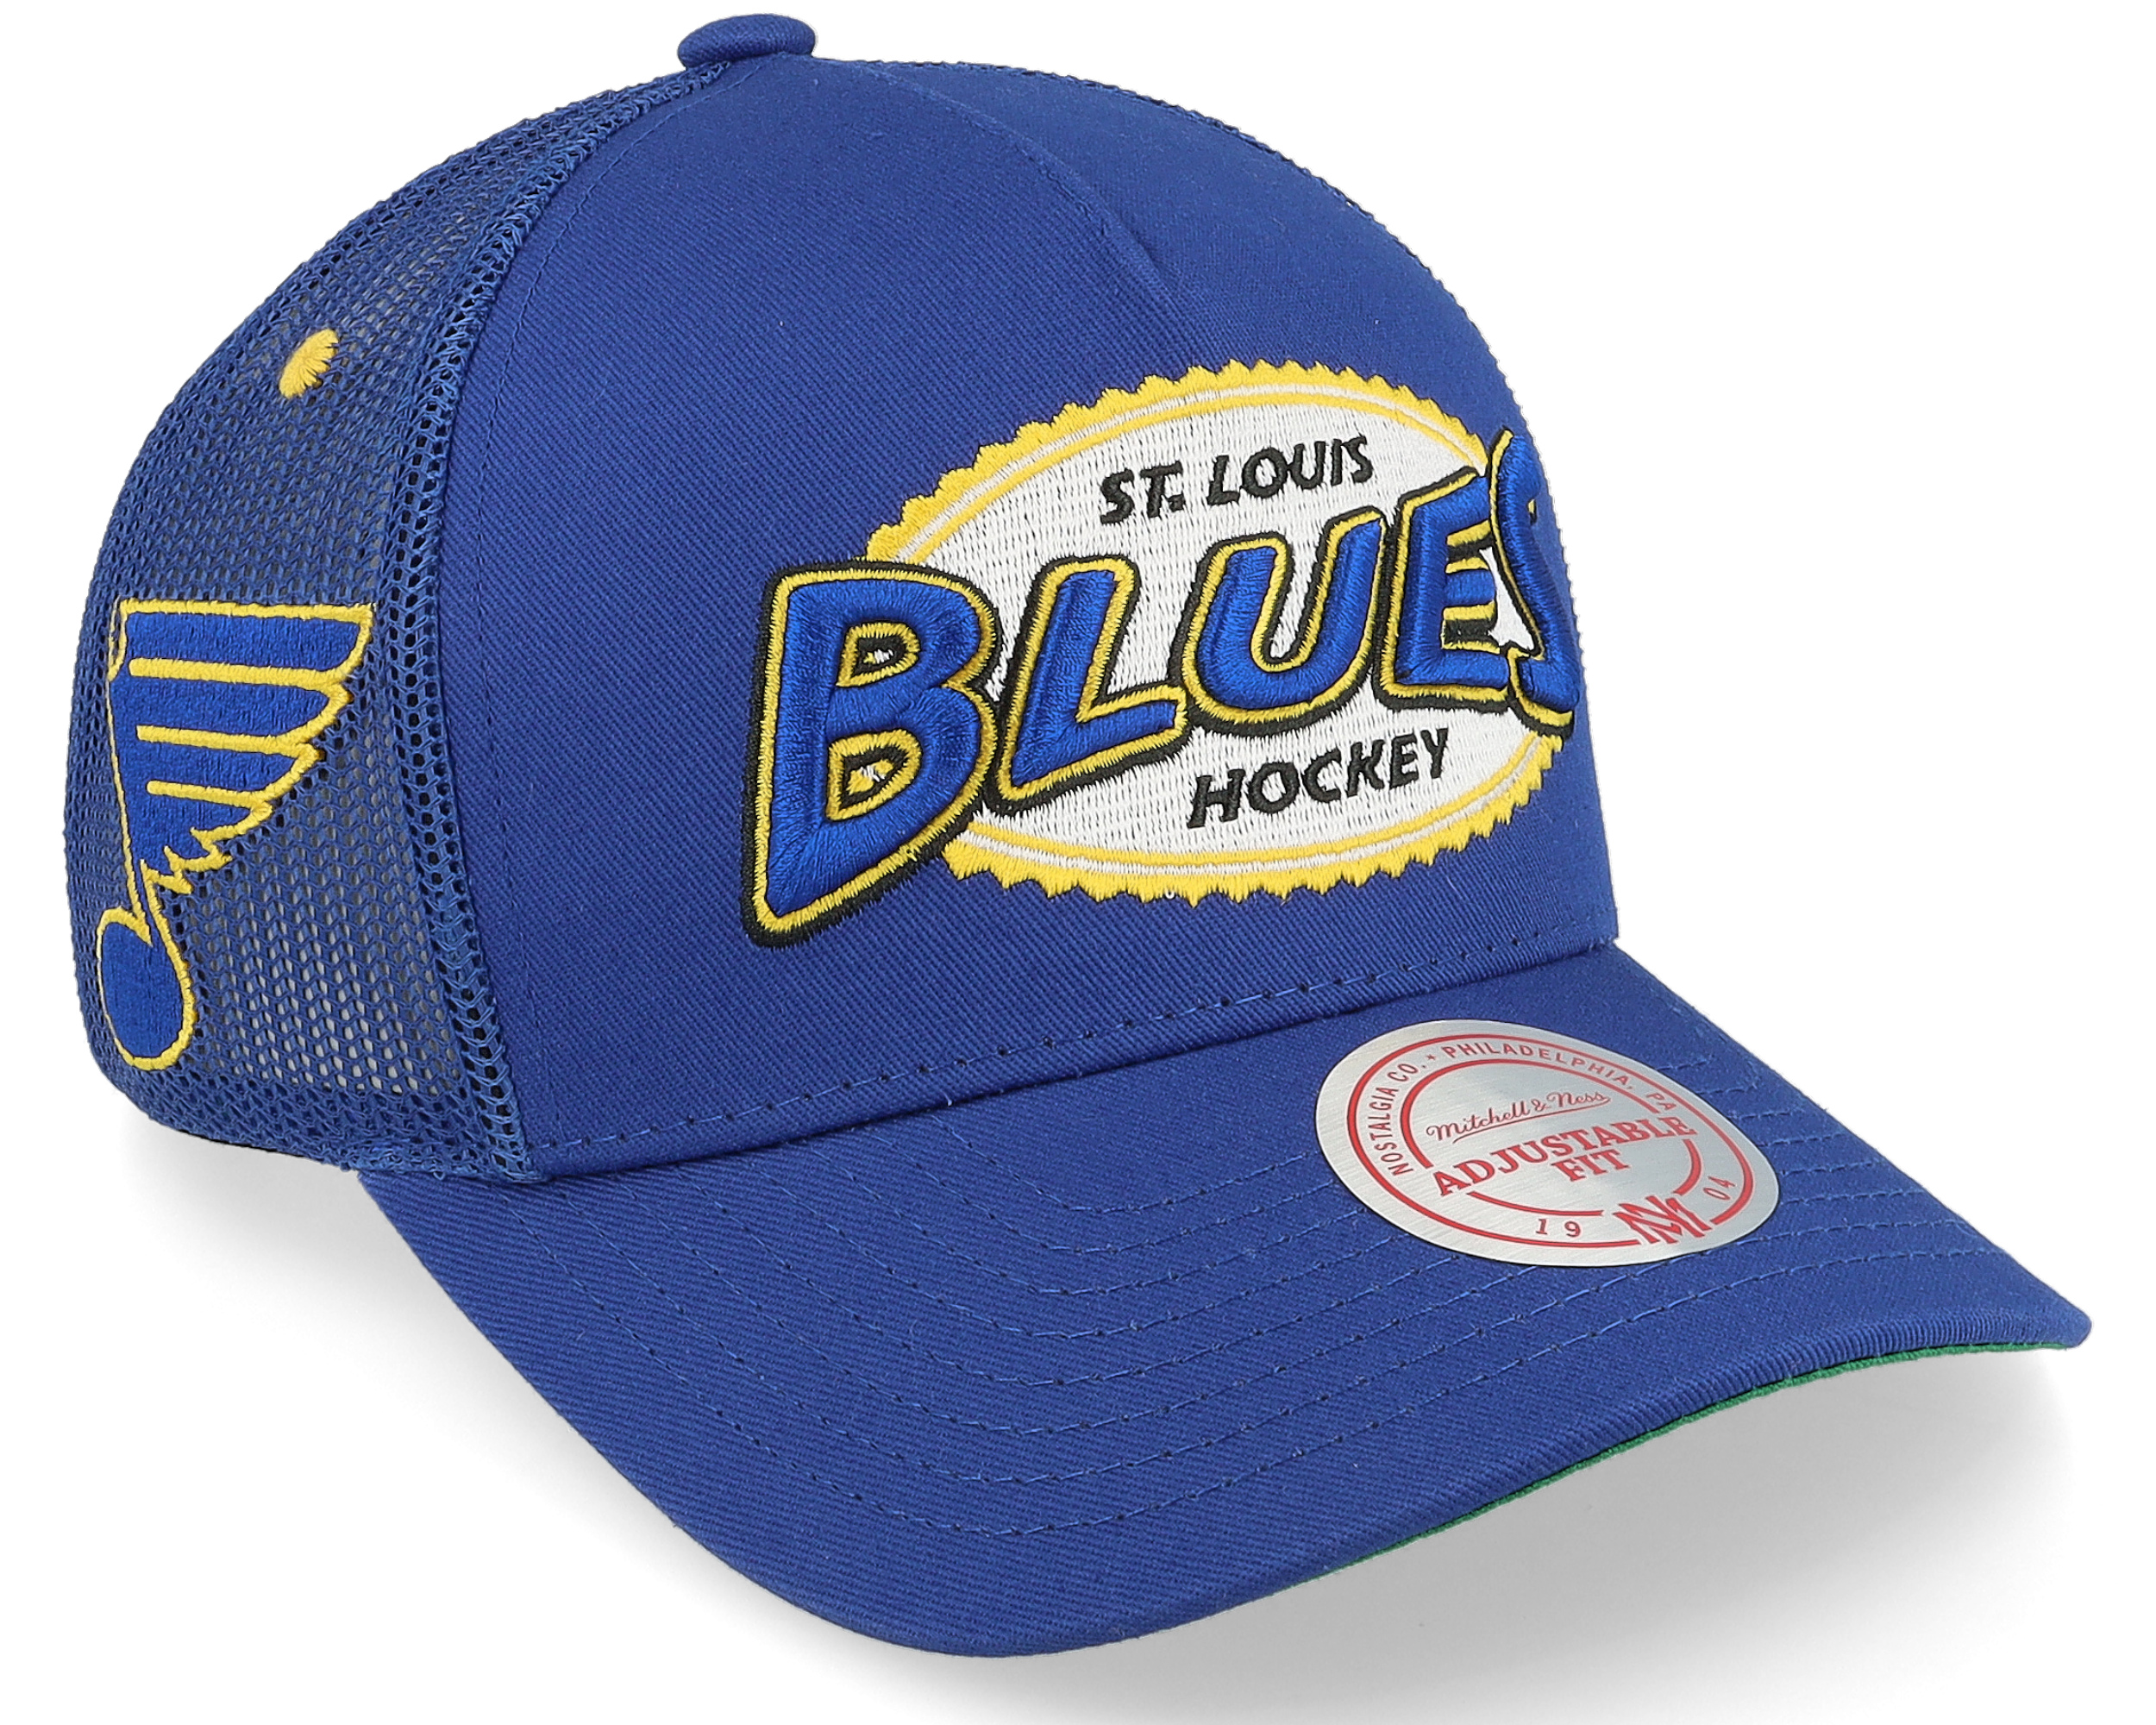 NHL St. Louis Blues hat